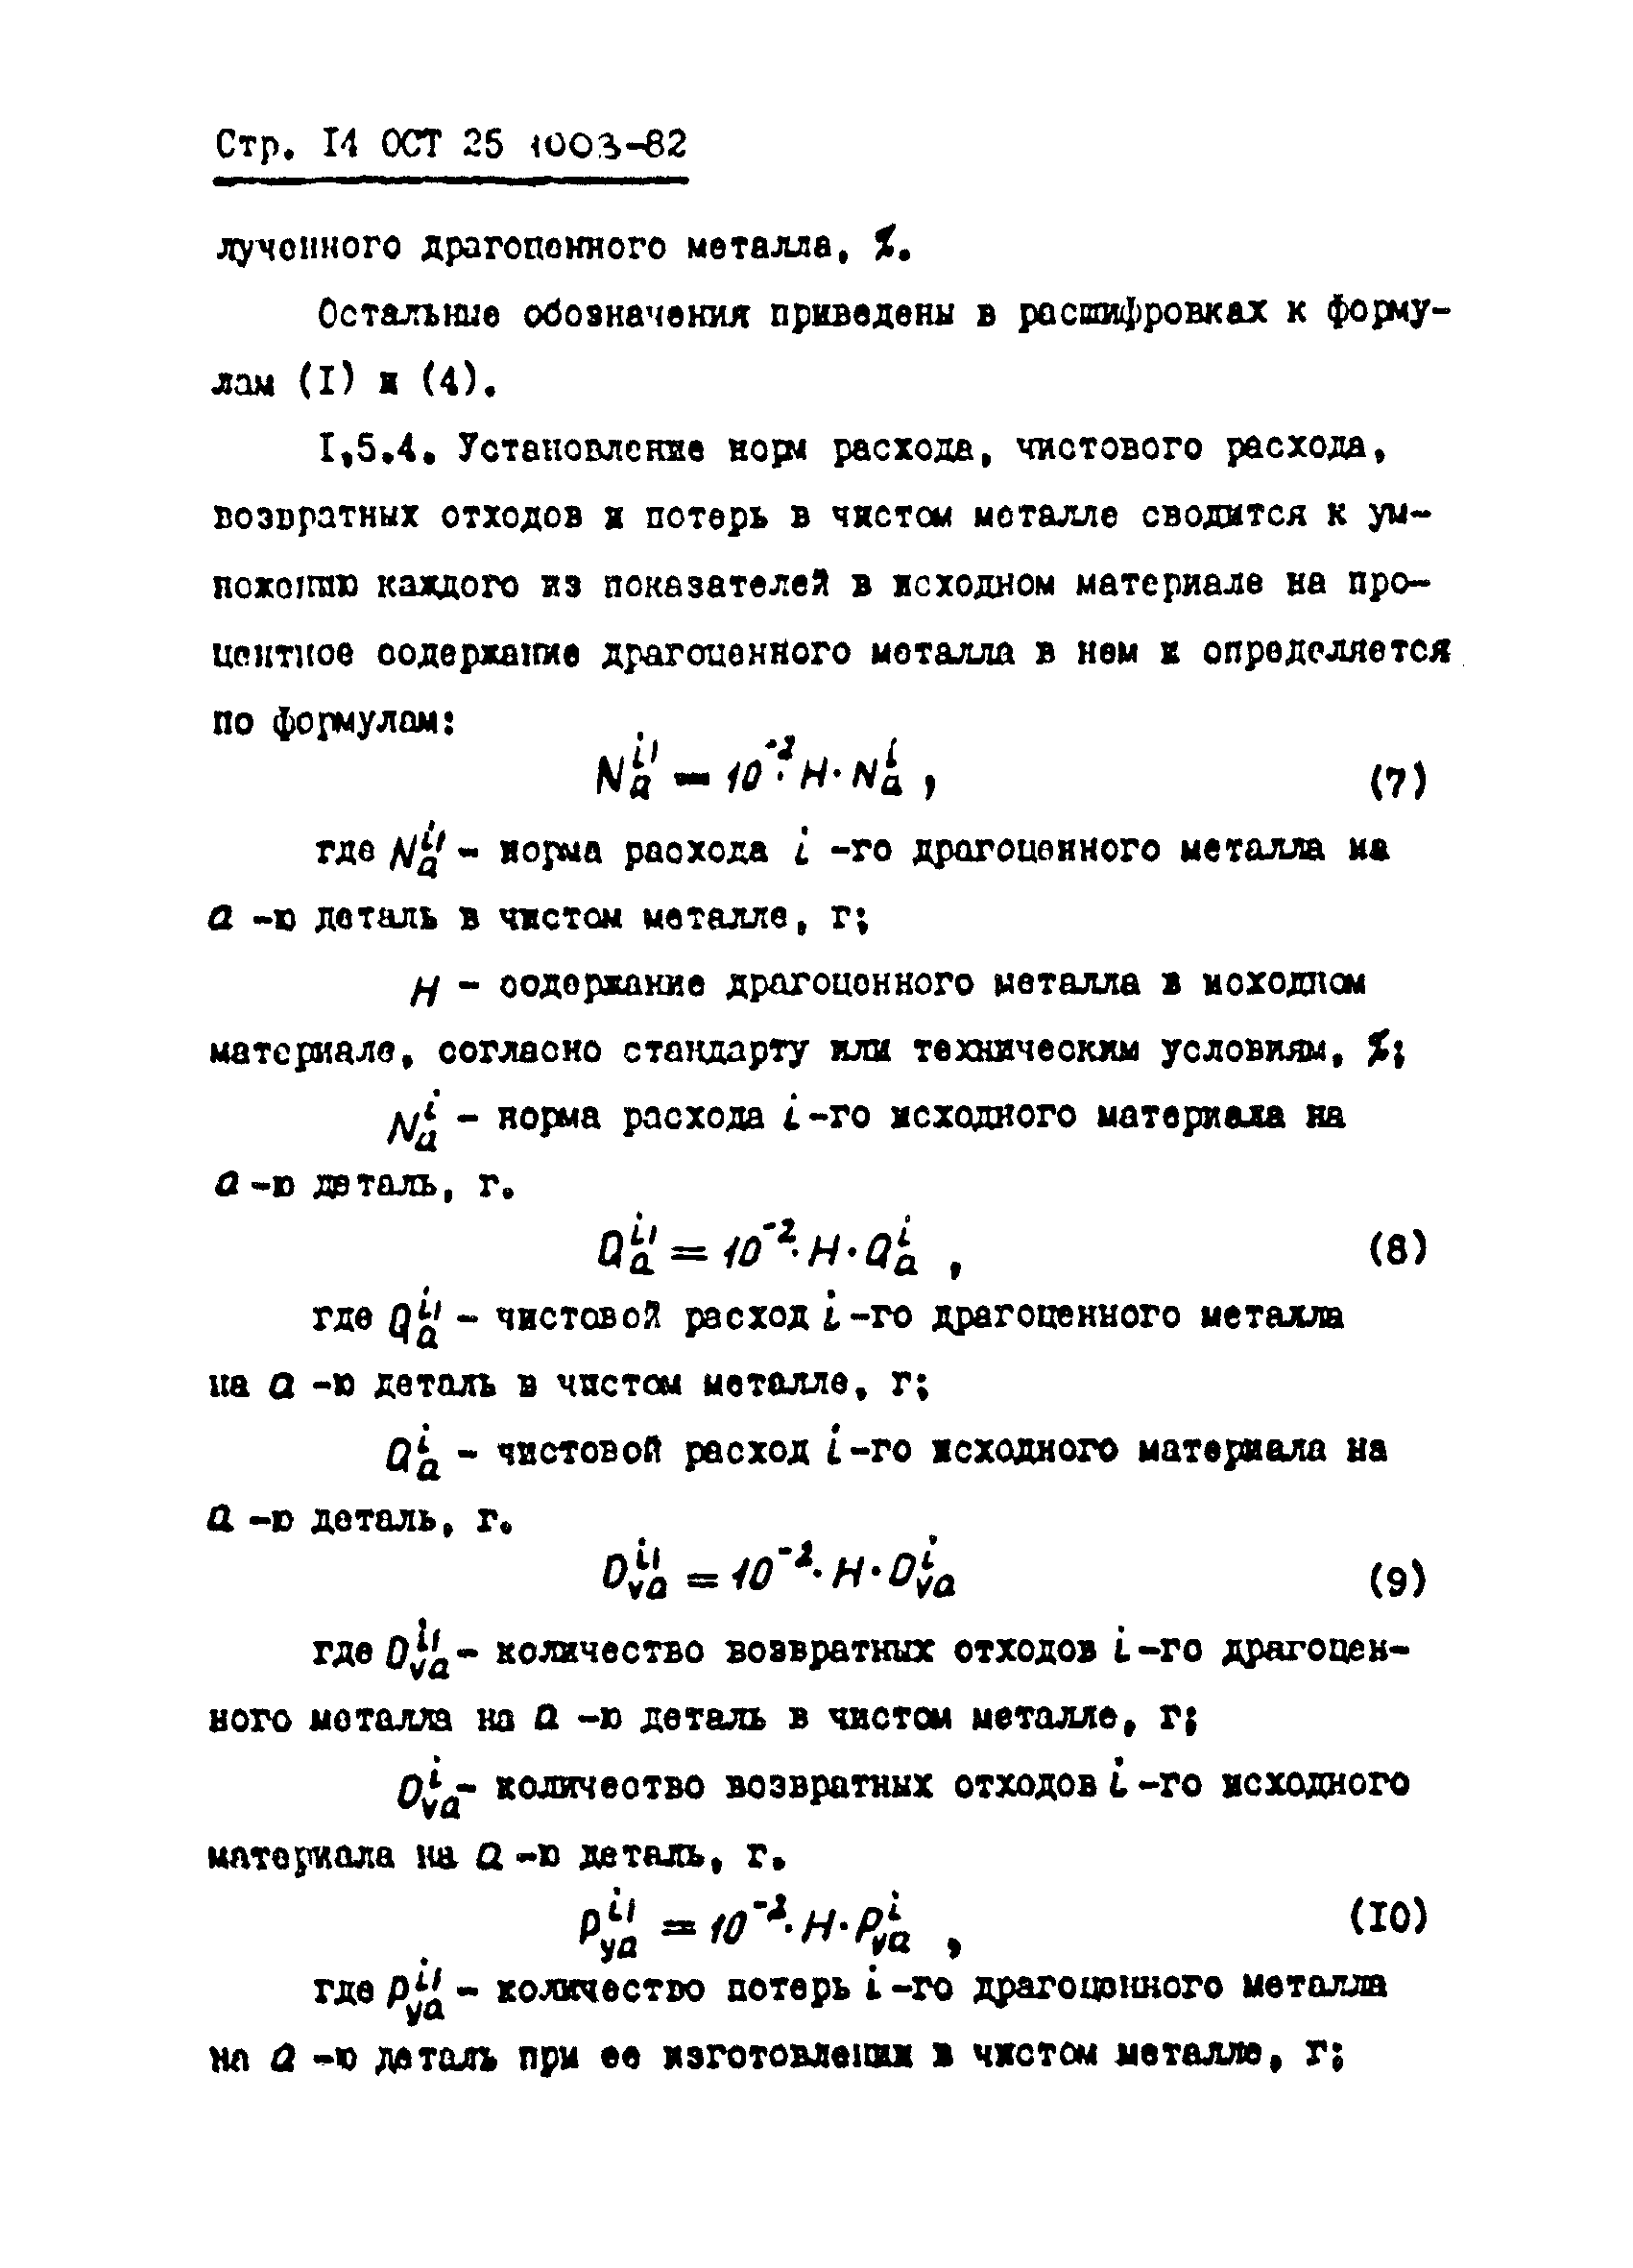 ОСТ 25.1003-82